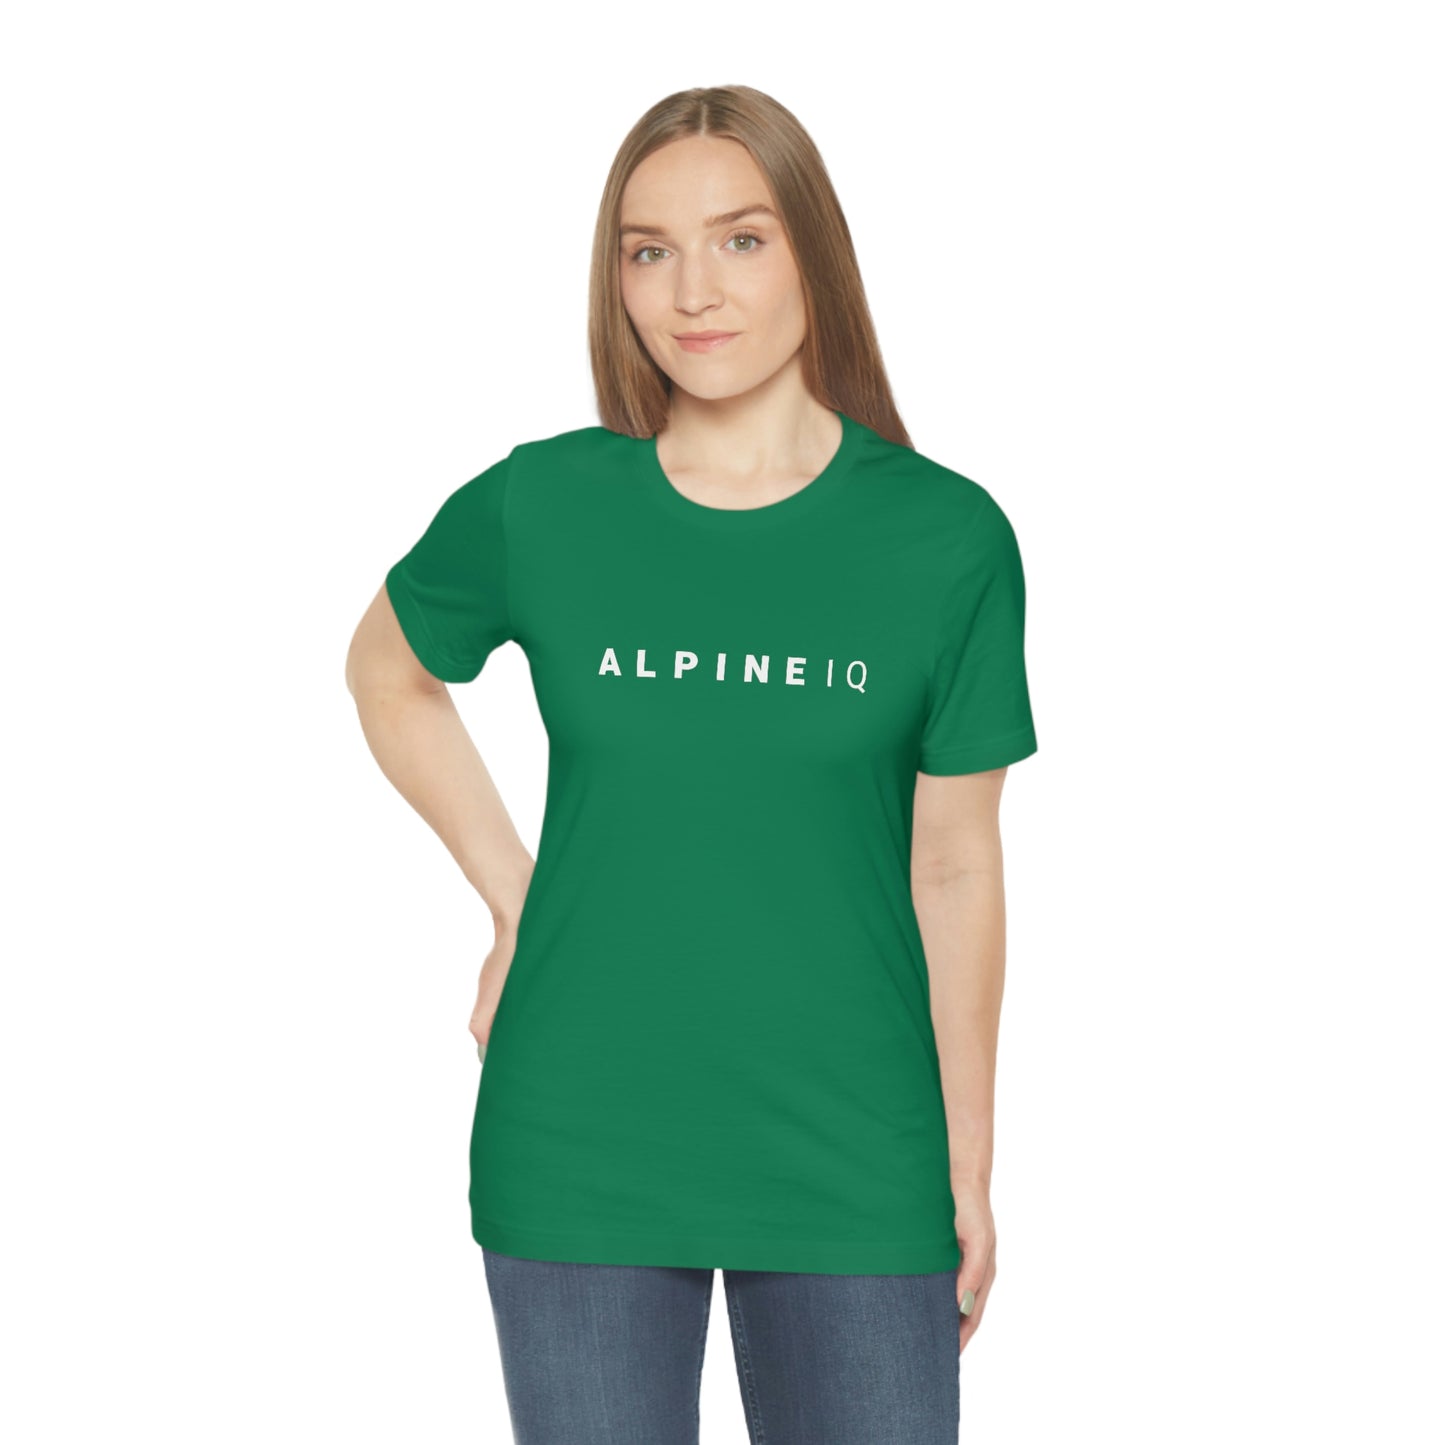 Alpine IQ Logo Short Sleeve T-Shirt - Light Weight